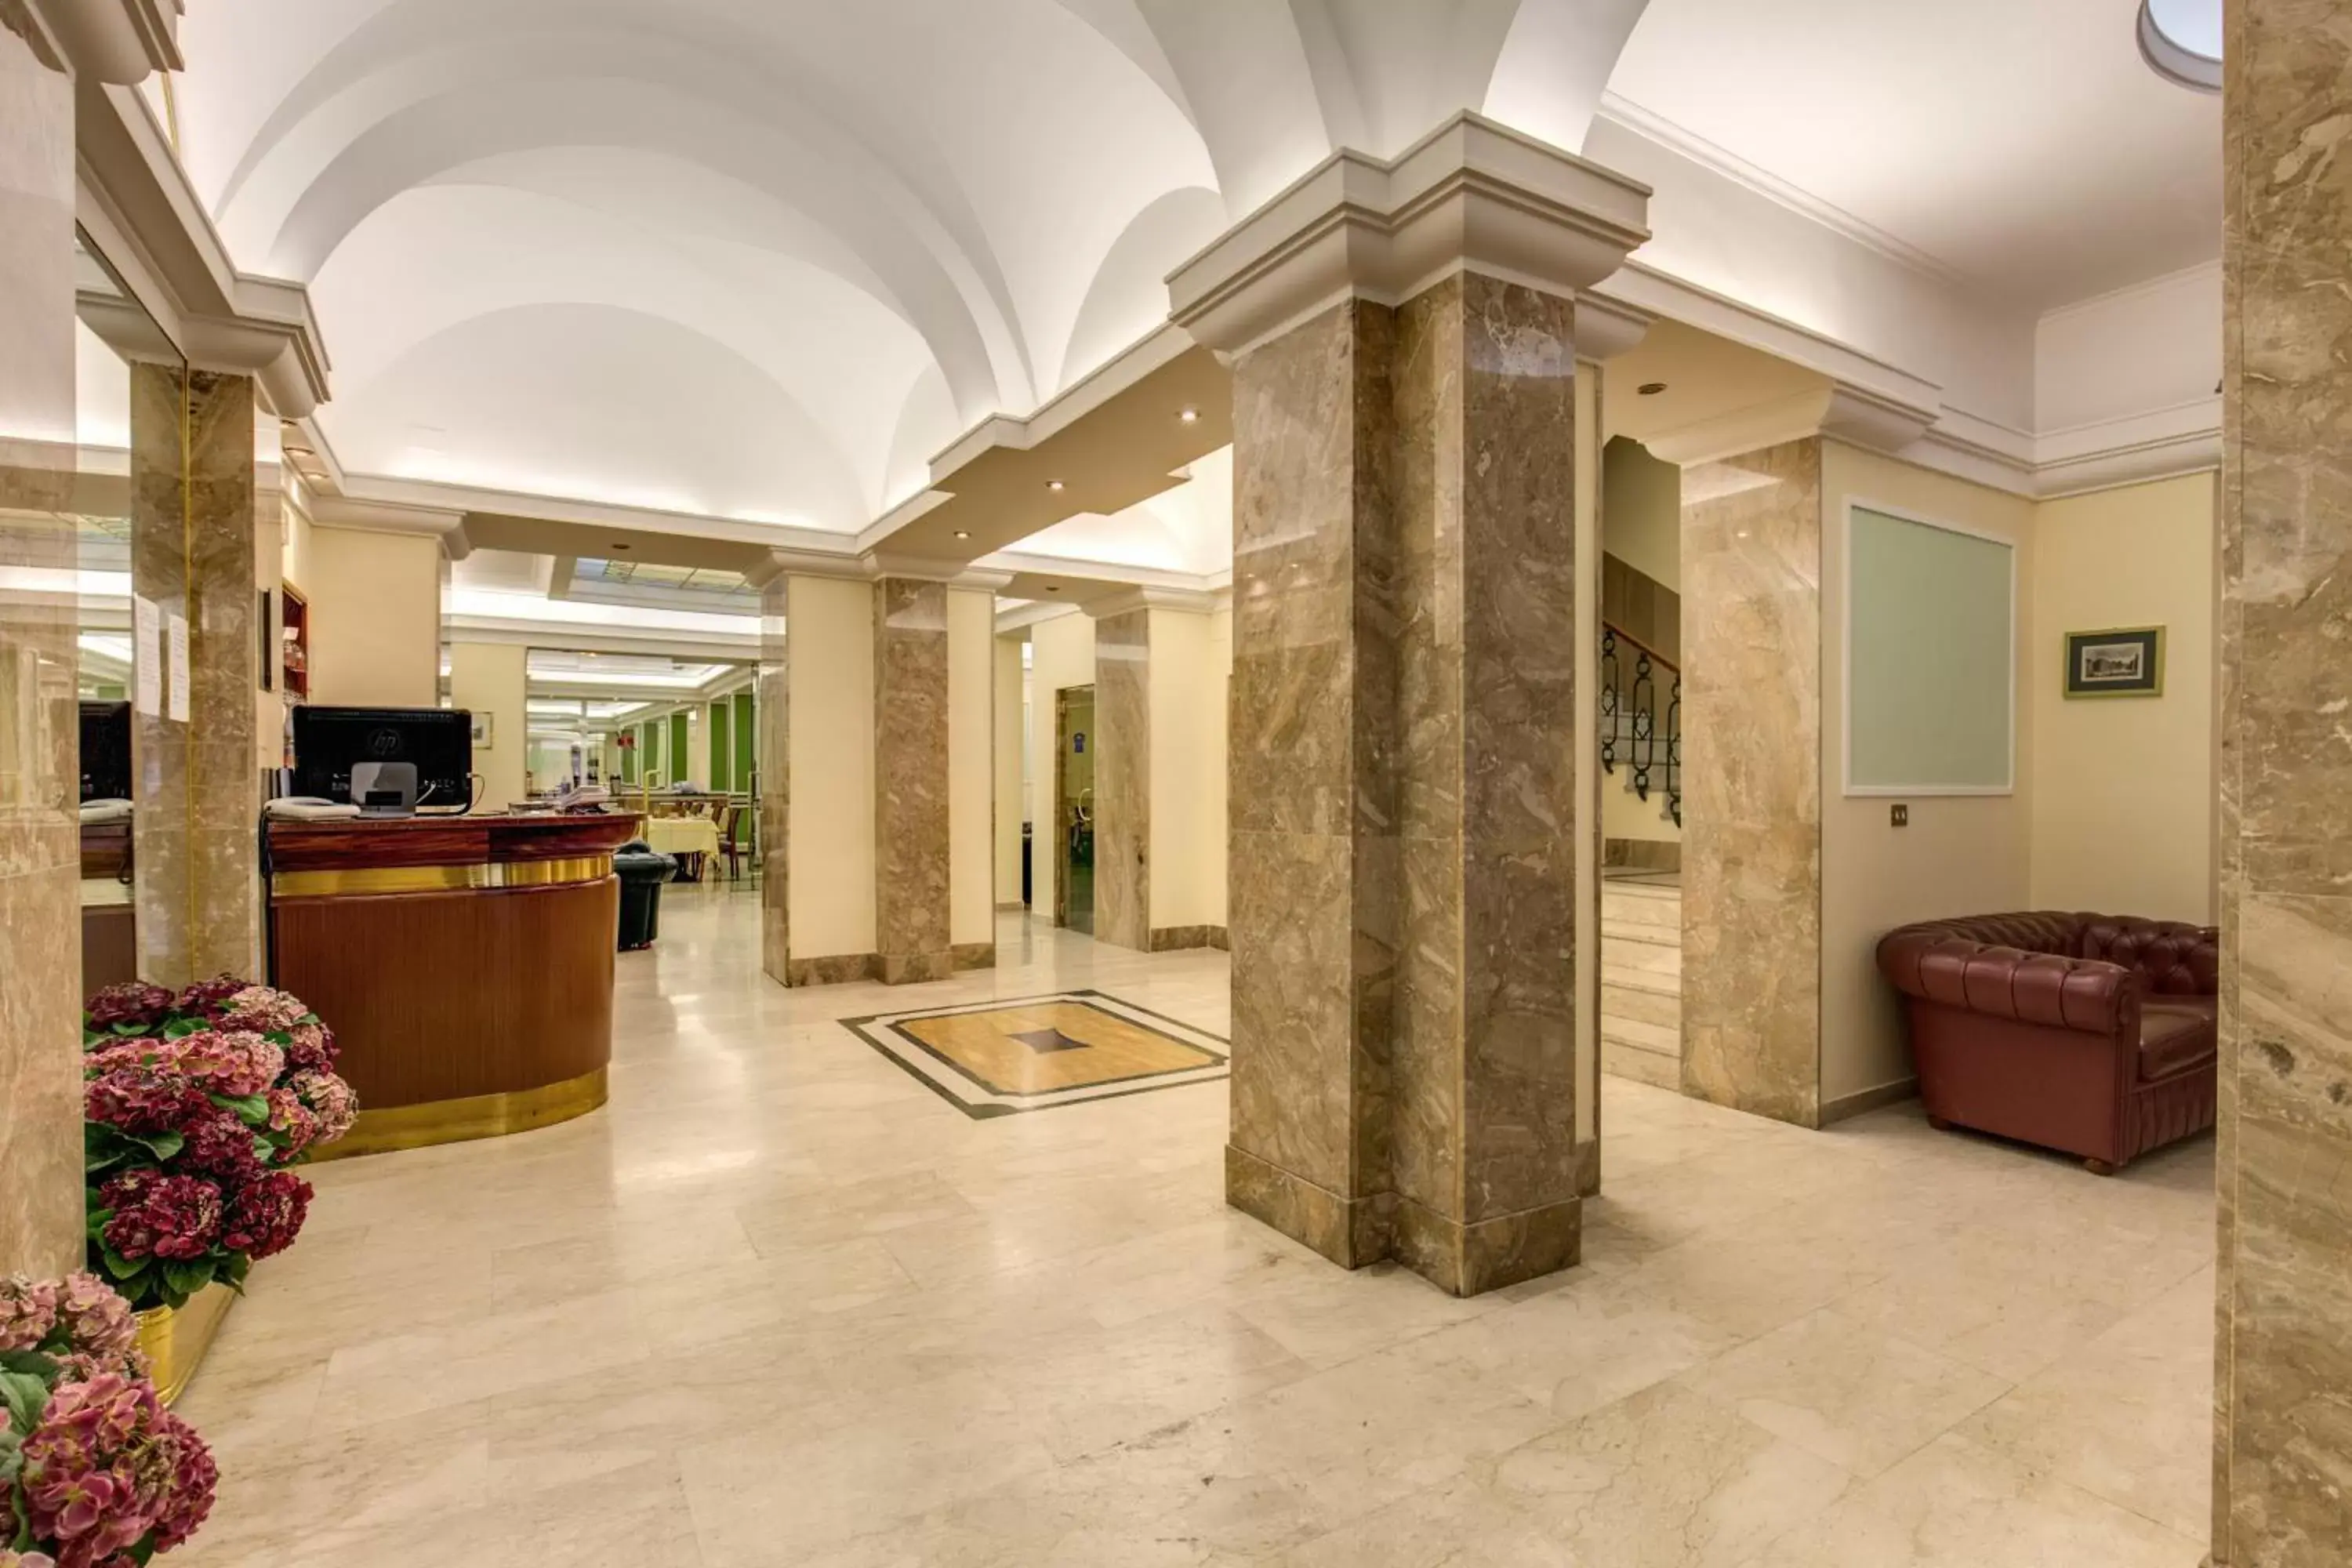 Lobby or reception, Lobby/Reception in Hotel Igea